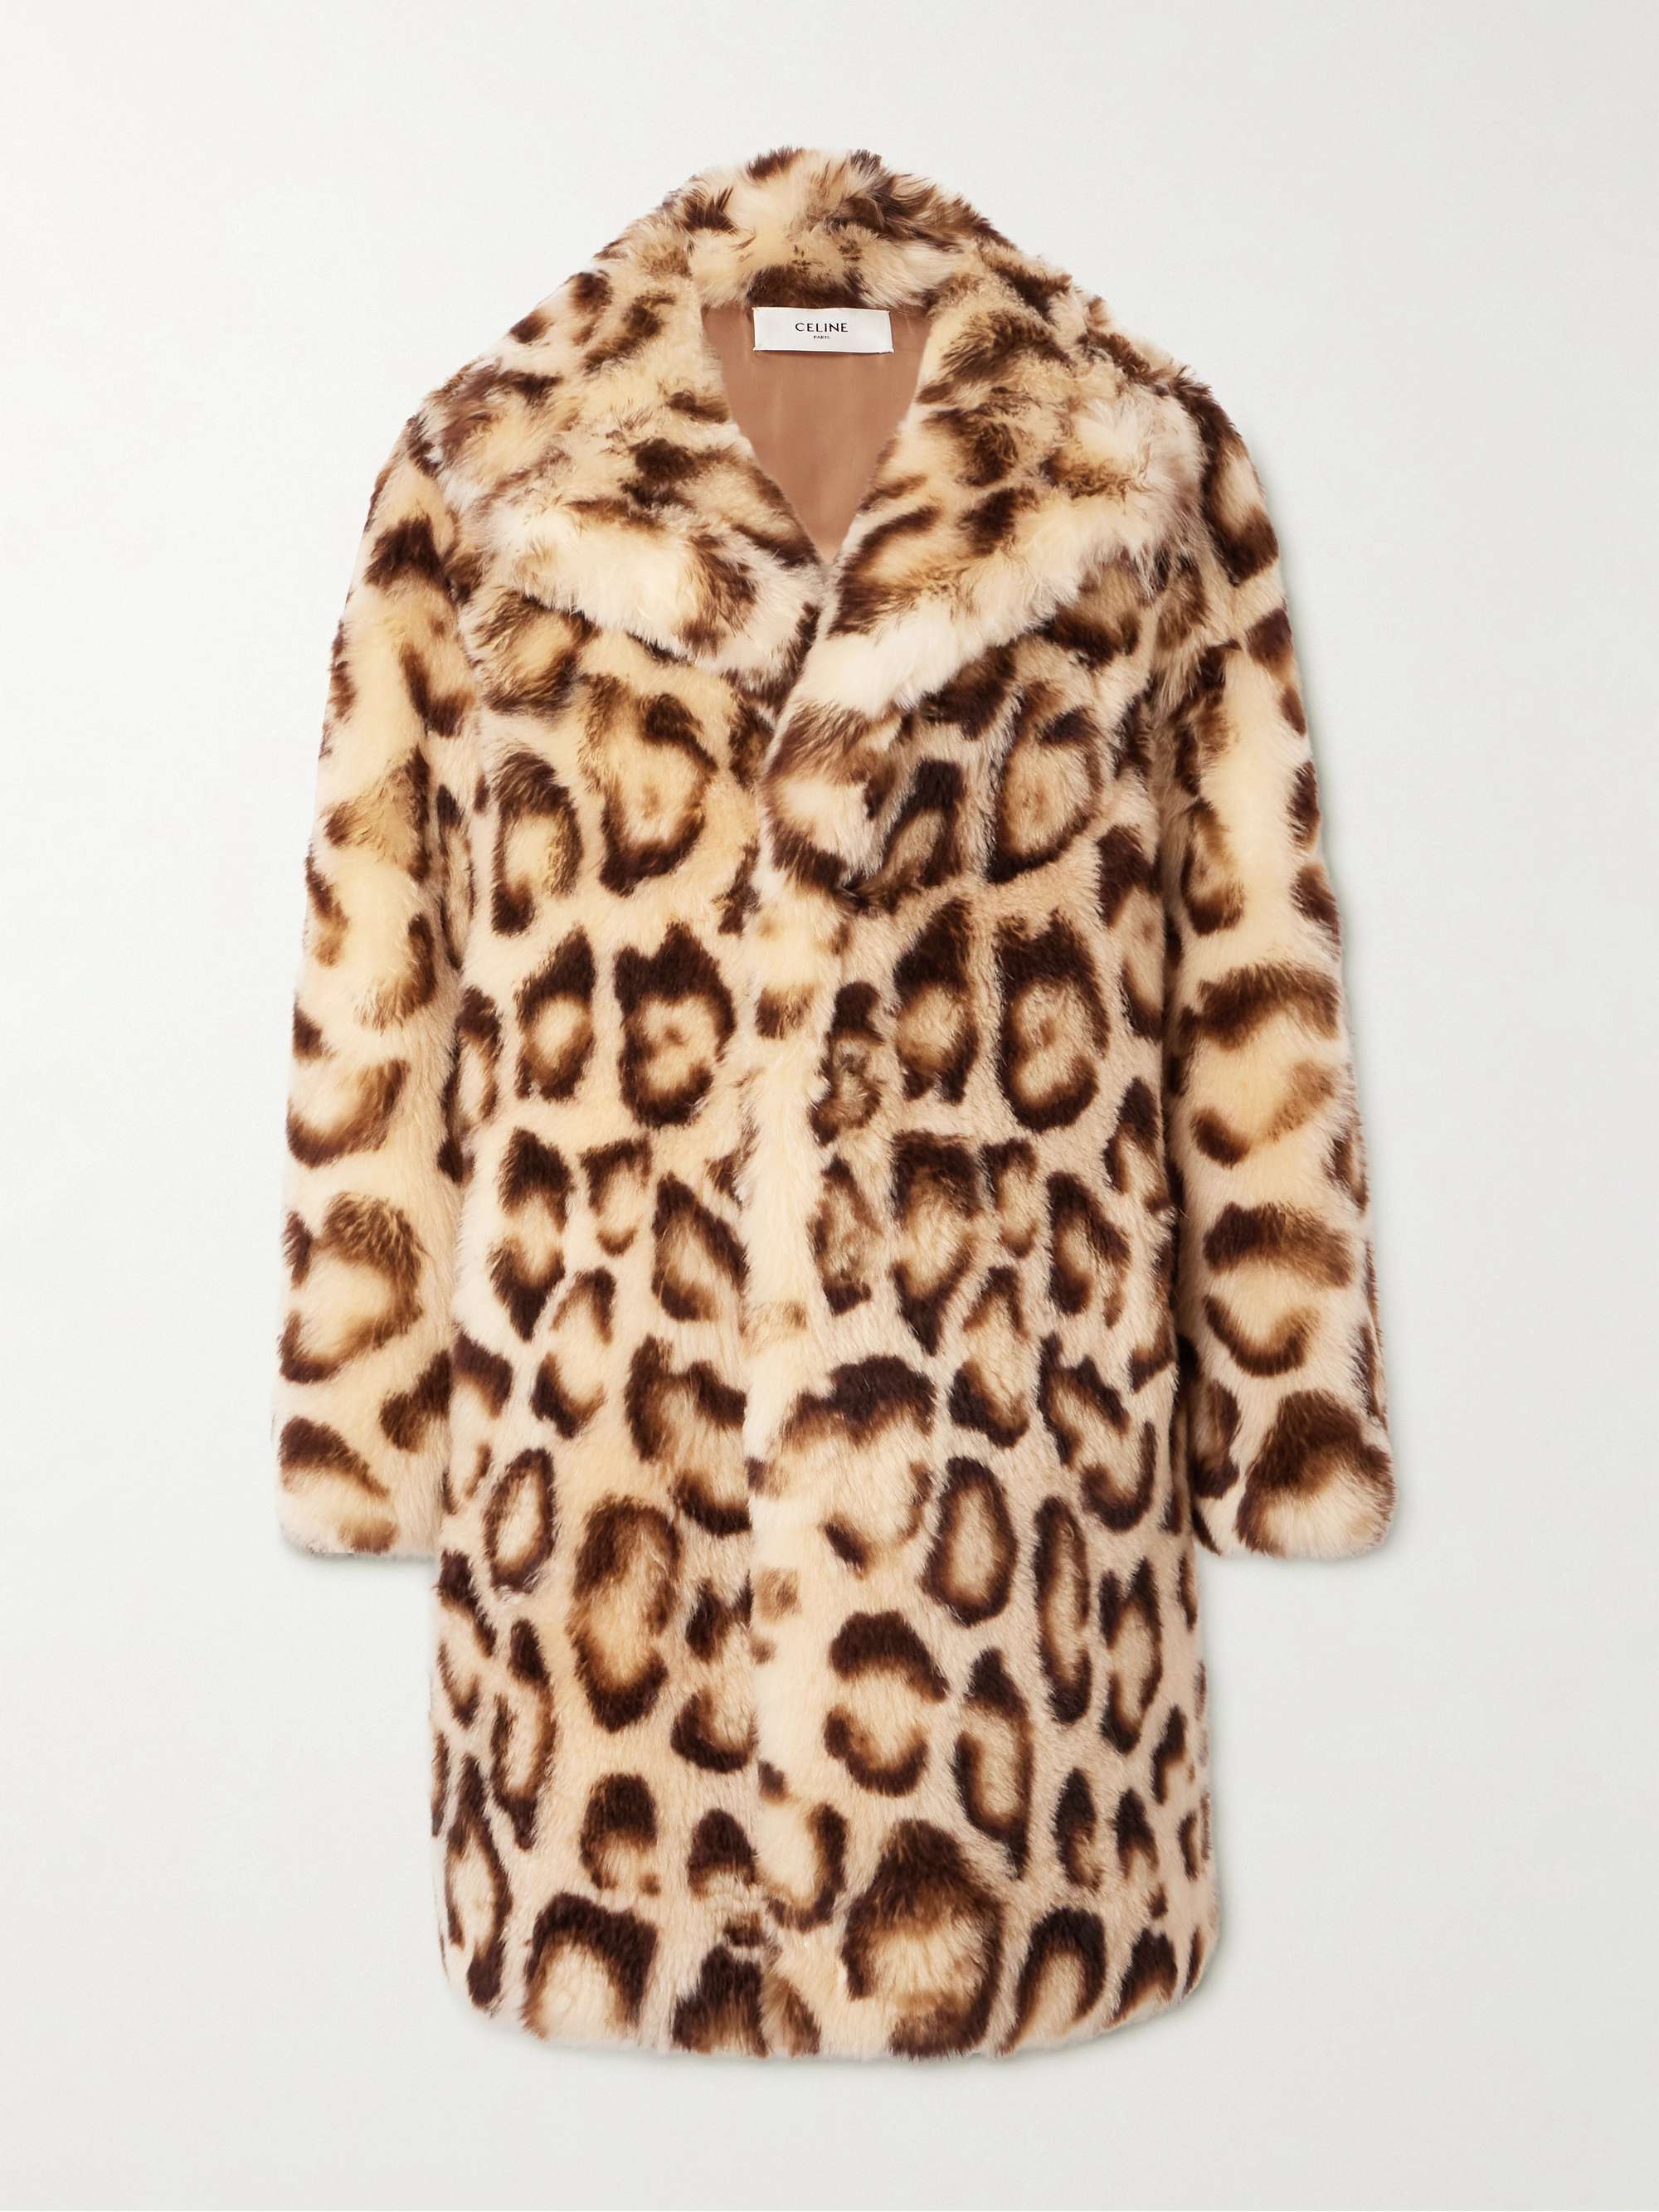 CELINE HOMME Leopard-Print Goat Hair Coat for Men | MR PORTER